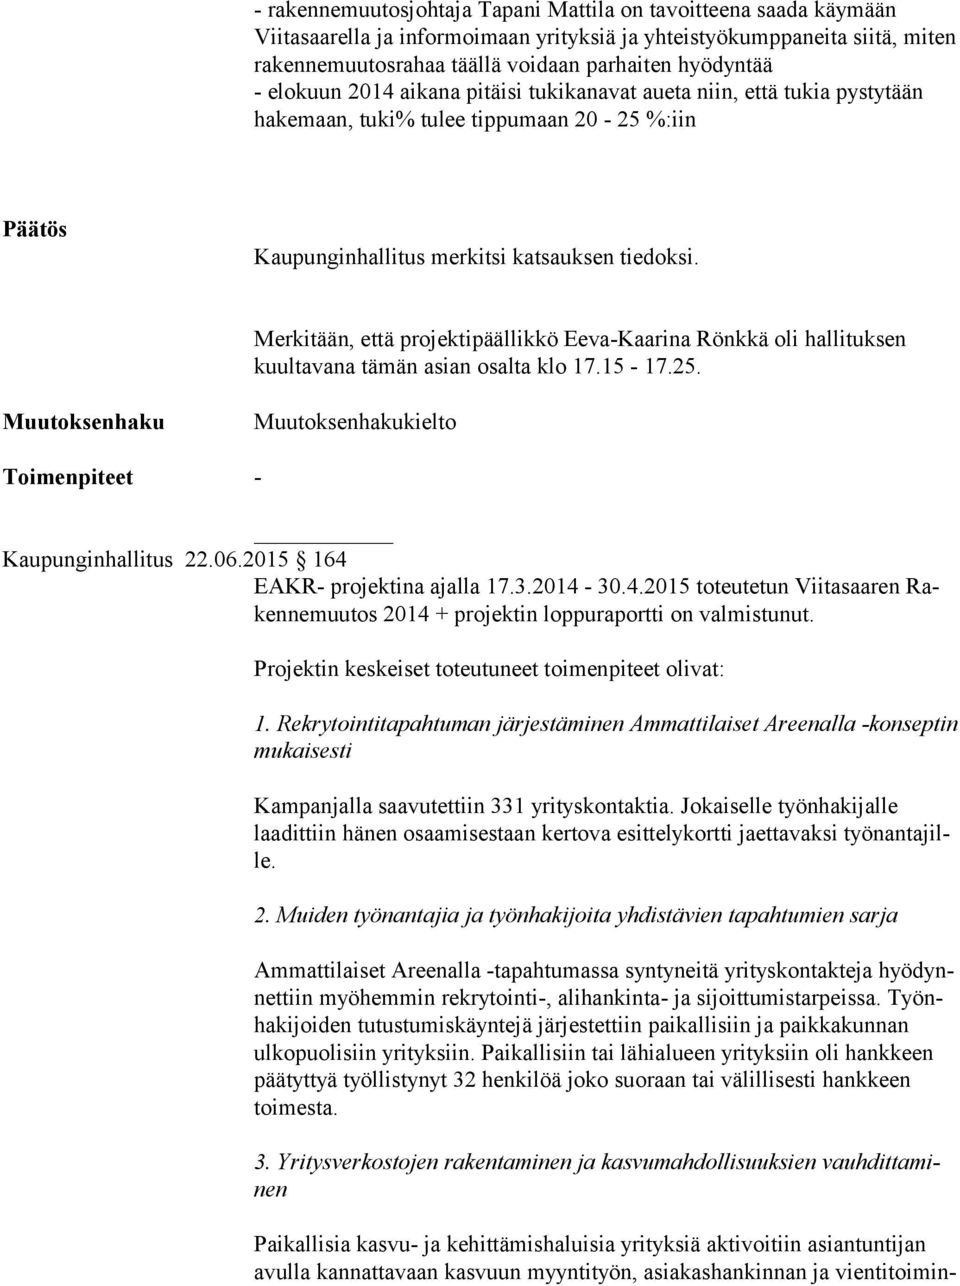 Merkitään, että projektipäällikkö Eeva-Kaarina Rönkkä oli hallituksen kuultavana tämän asian osalta klo 17.15-17.25. kielto Kaupunginhallitus 22.06.2015 164 